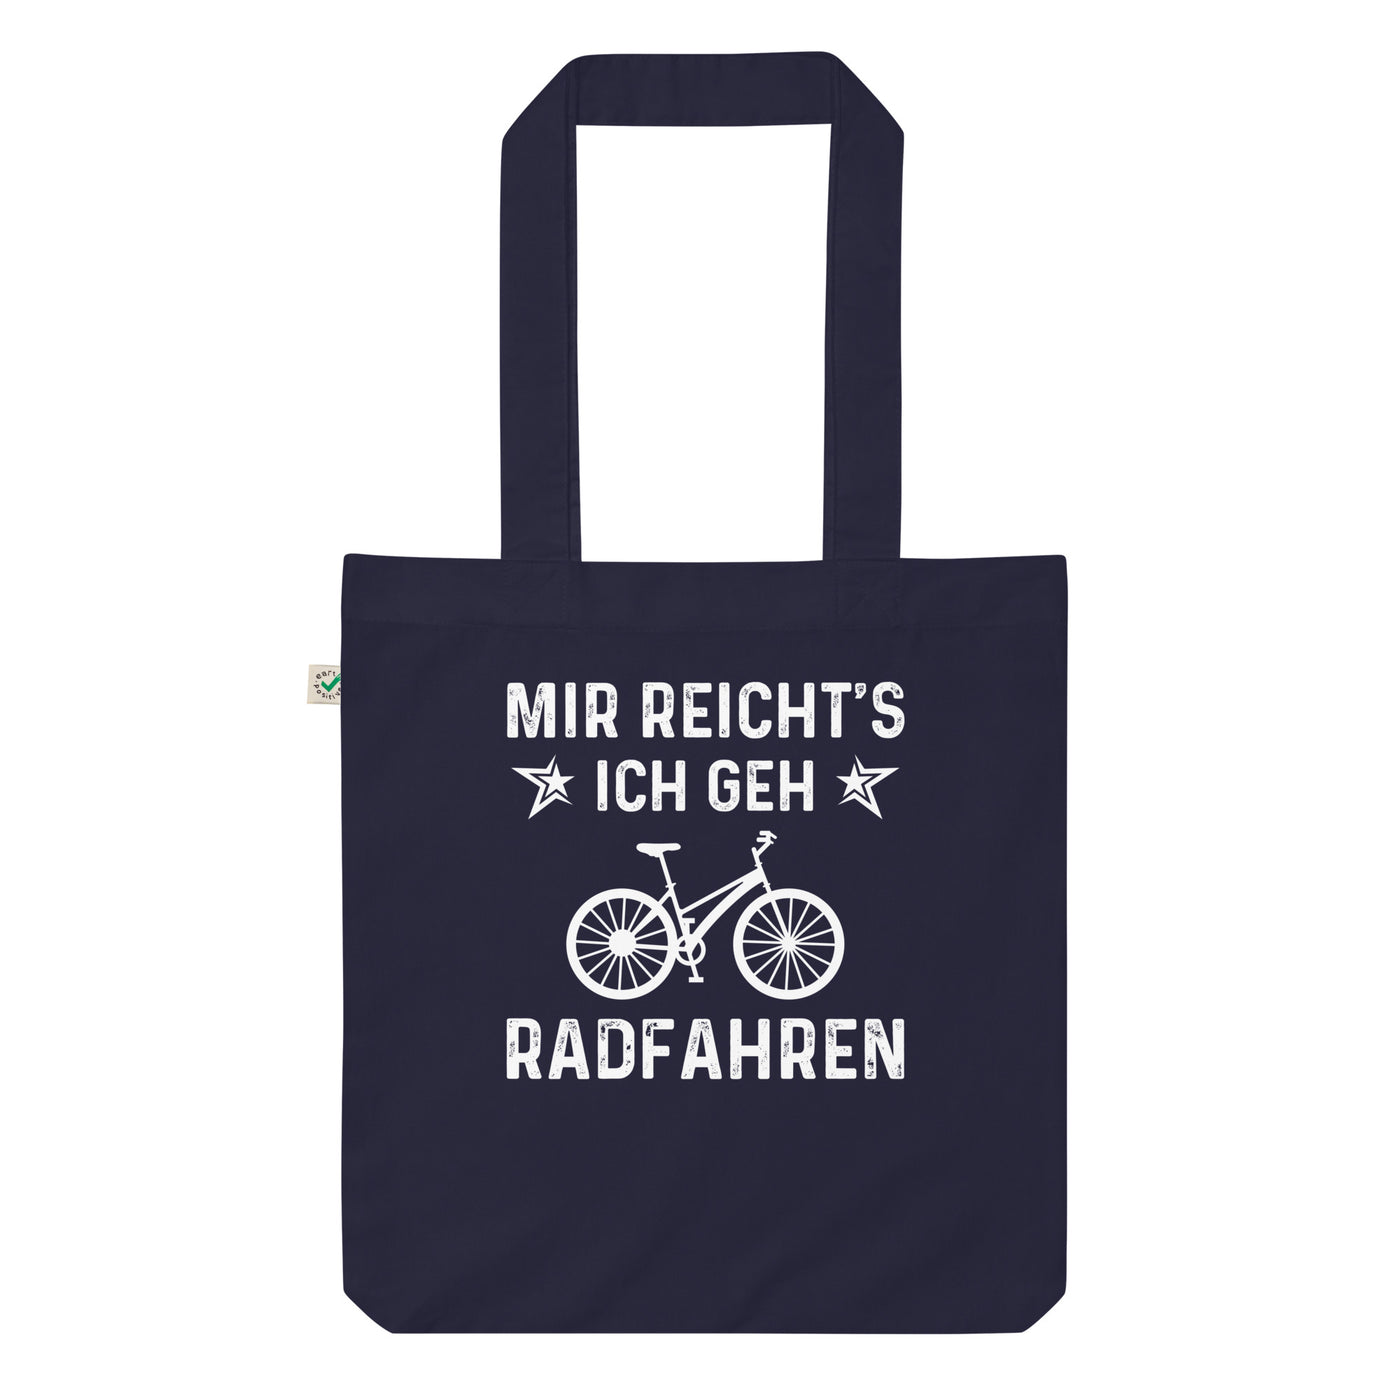 Mir Reicht'S Ich Gen Radfahren - Organic Einkaufstasche fahrrad Navy